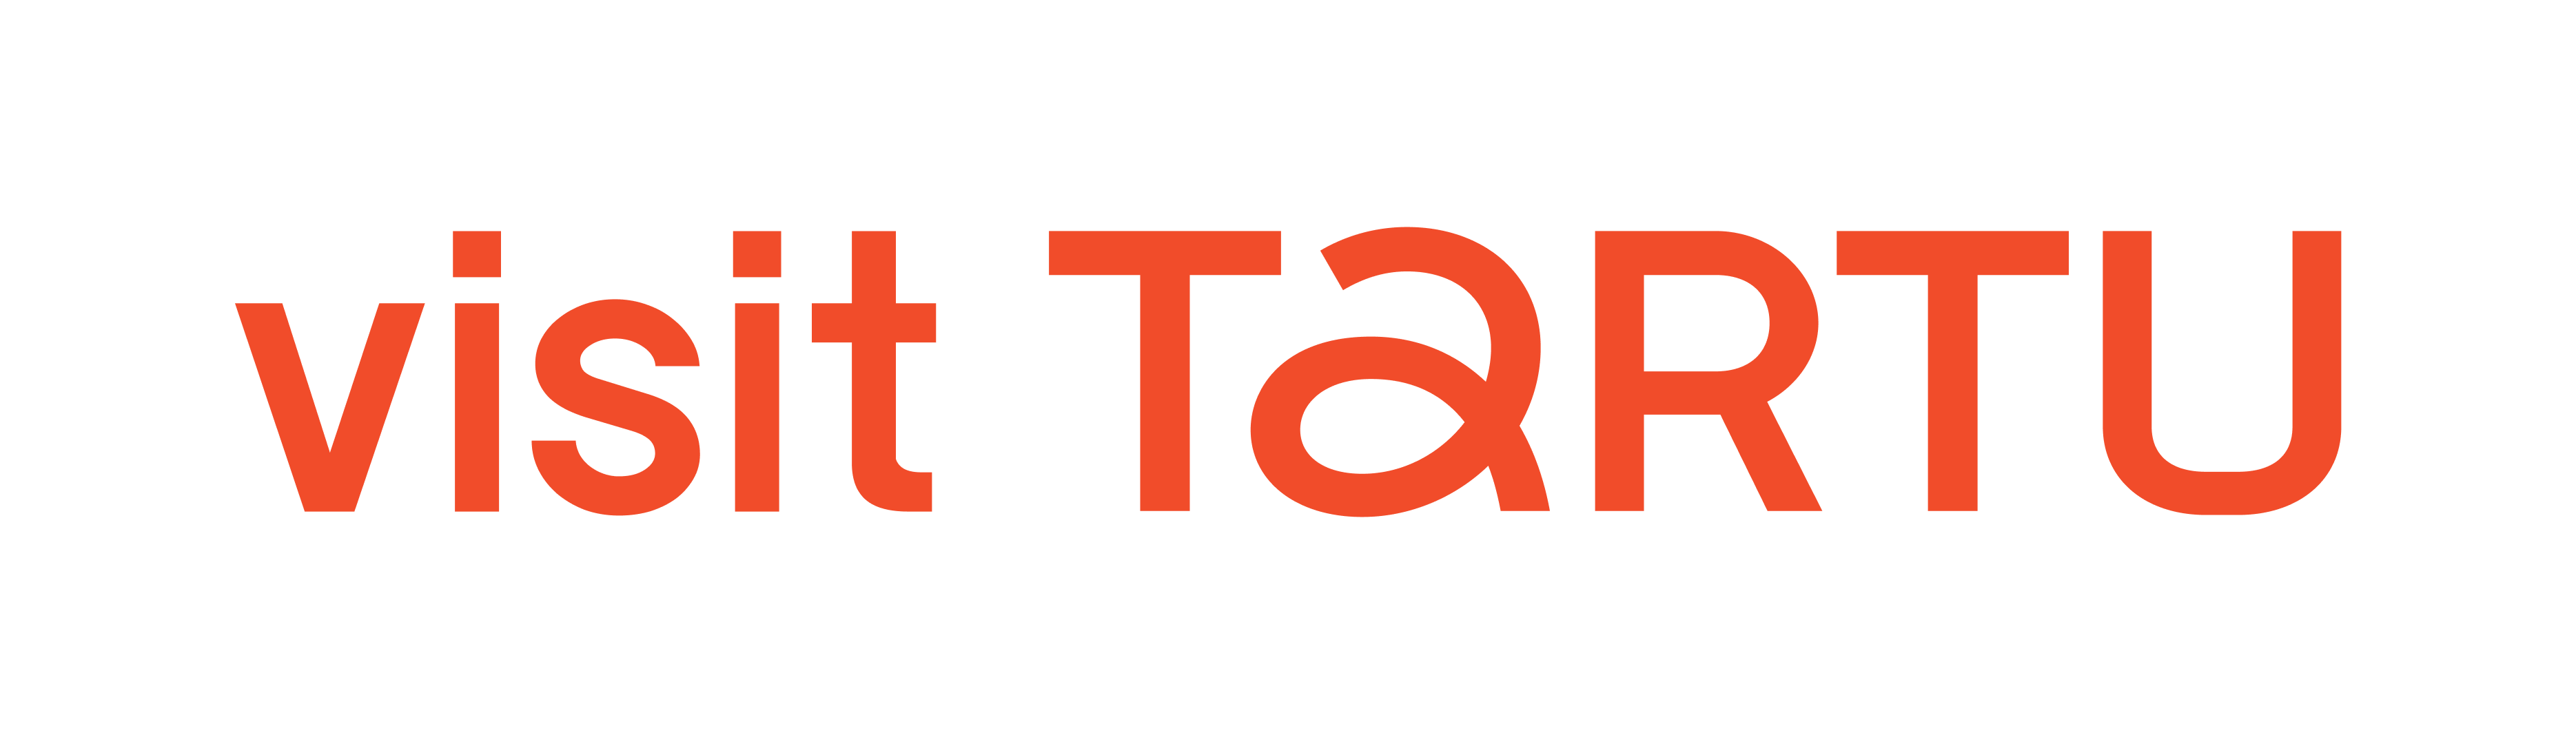 Visit-Tartu-logo-color_RGB.png